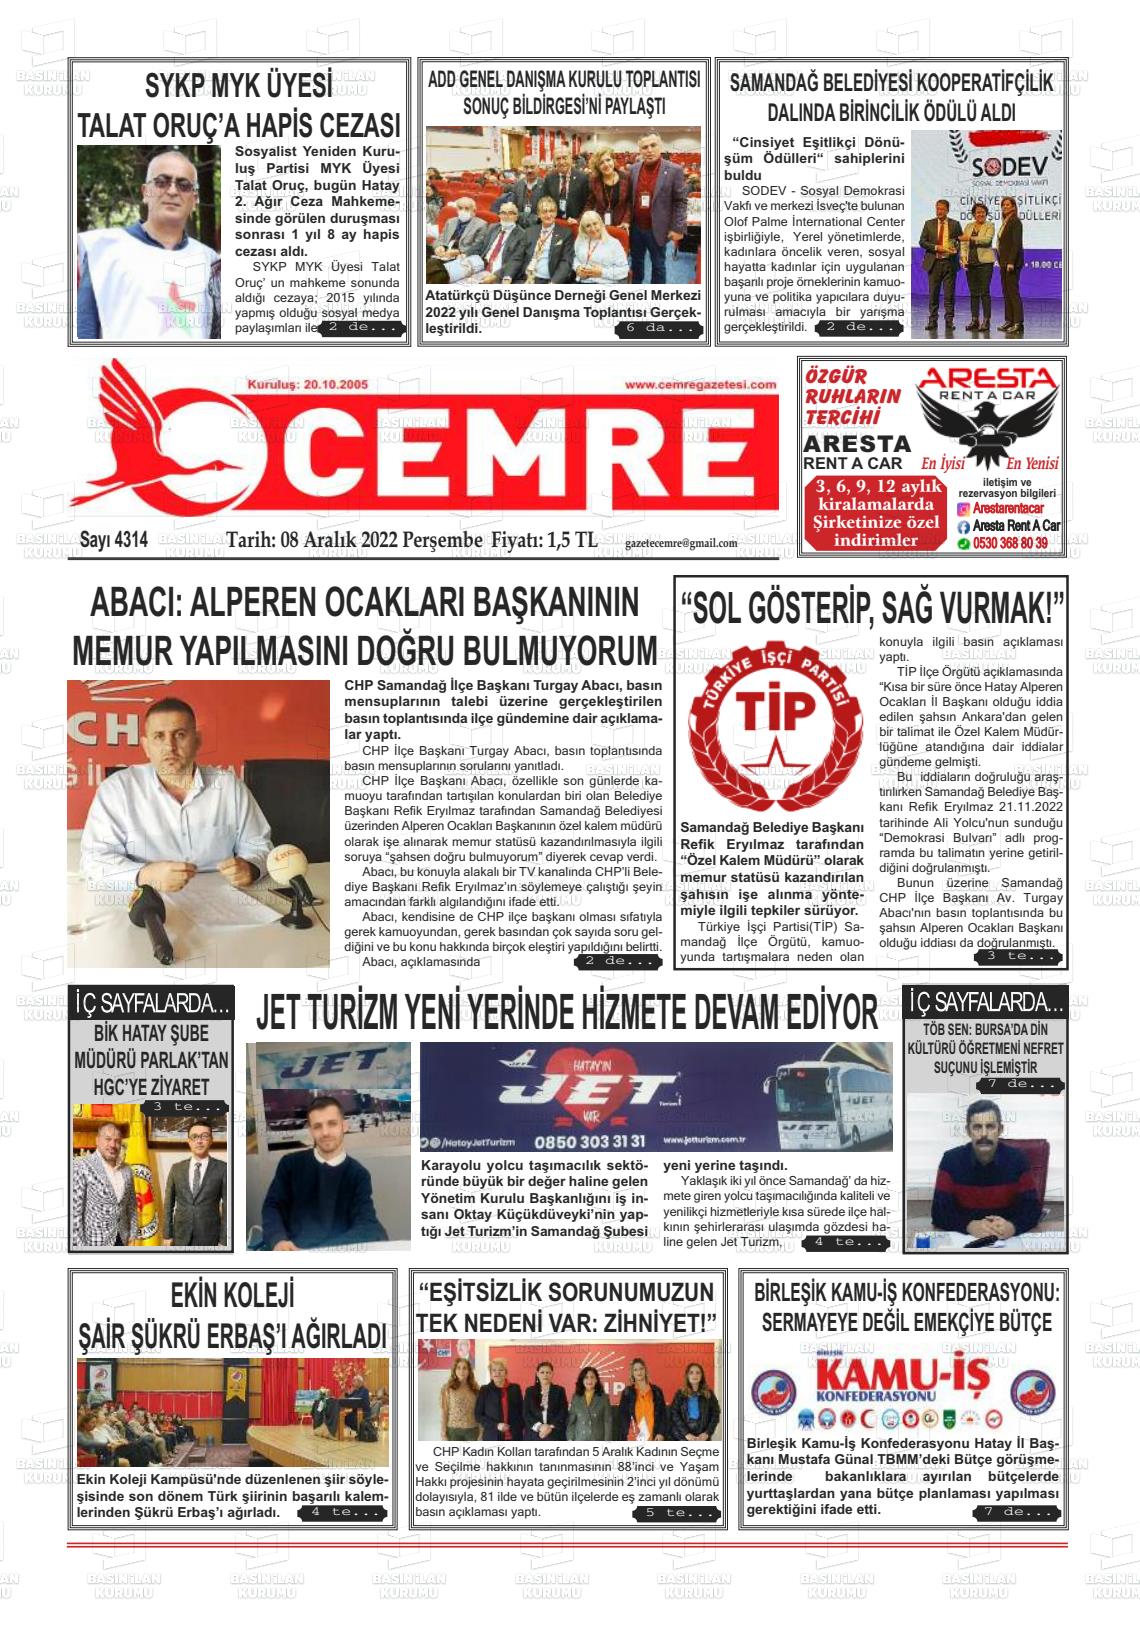 08 Aralık 2022 Cemre Gazete Manşeti